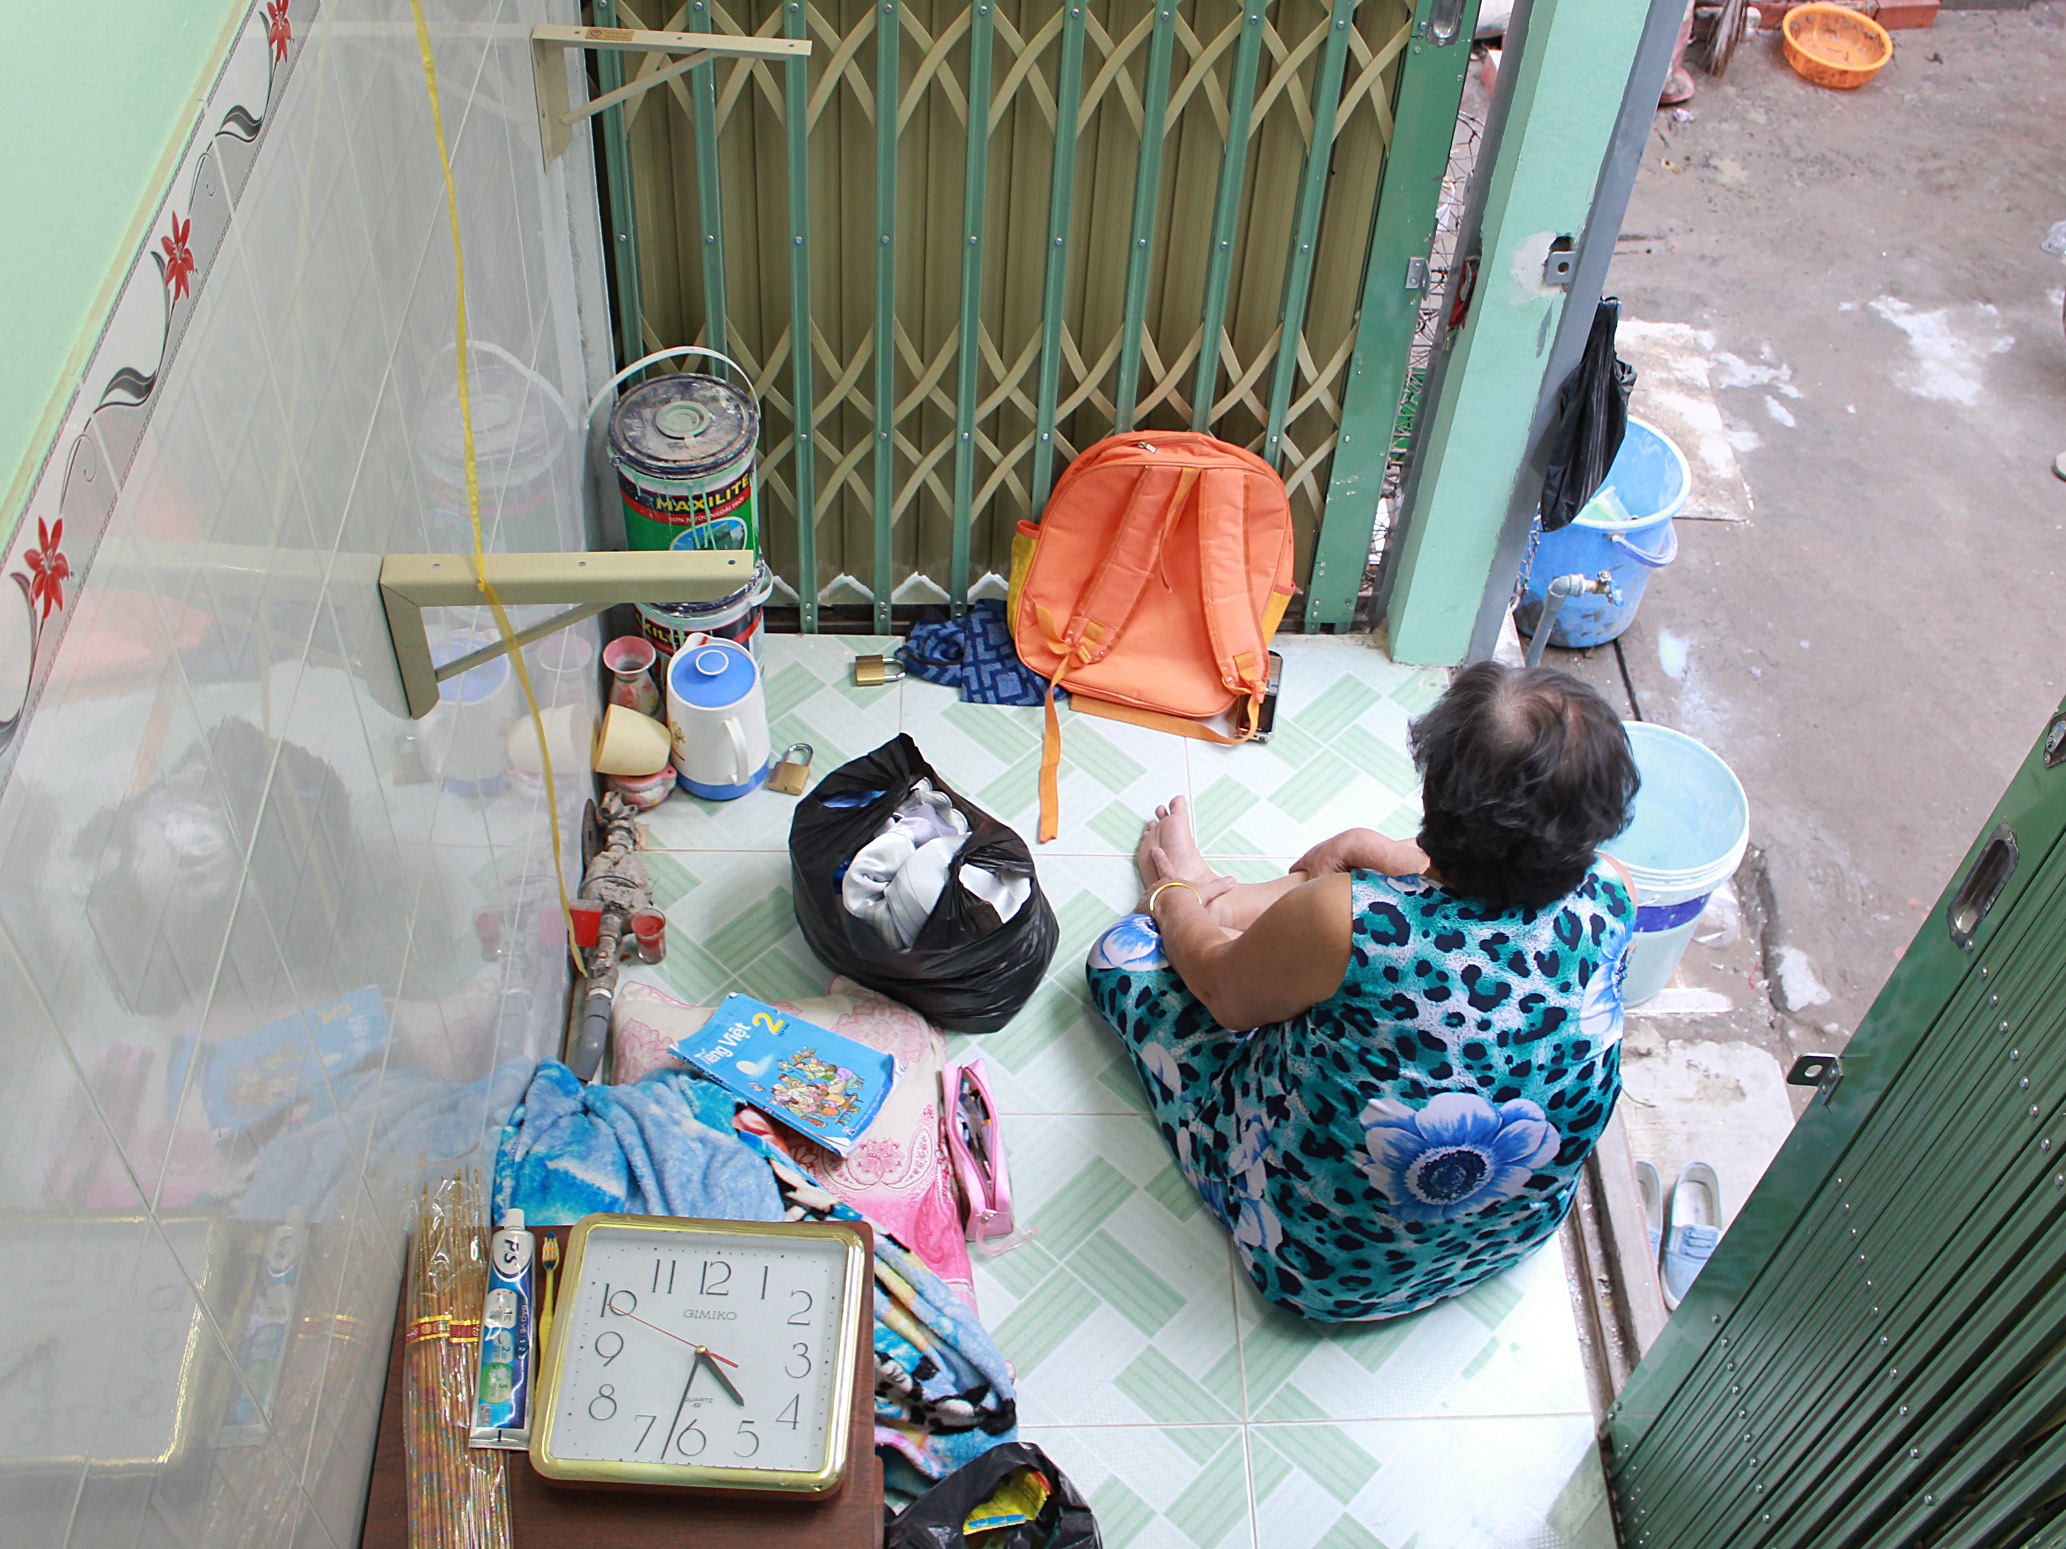 Sau khi xây xong căn nhà, bà Trần Thị Hoa dự định sẽ tích góp để mua sắm vật dụng - Ảnh: Vũ Phượng